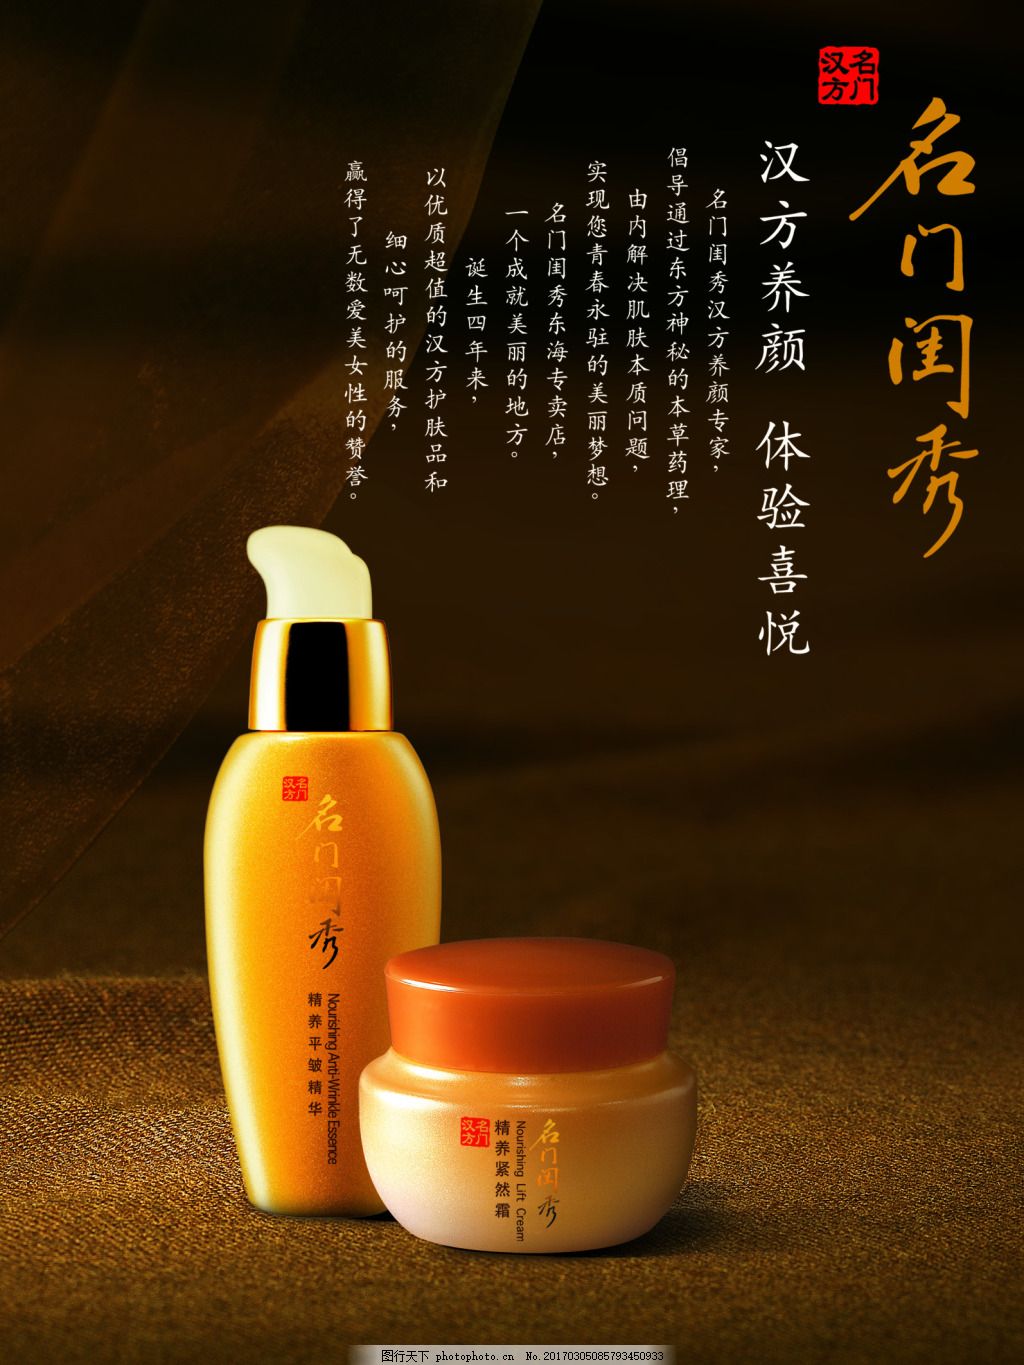 韩国知名化妆品品牌“露然丝(LOHACELL)”入驻中国啦！！